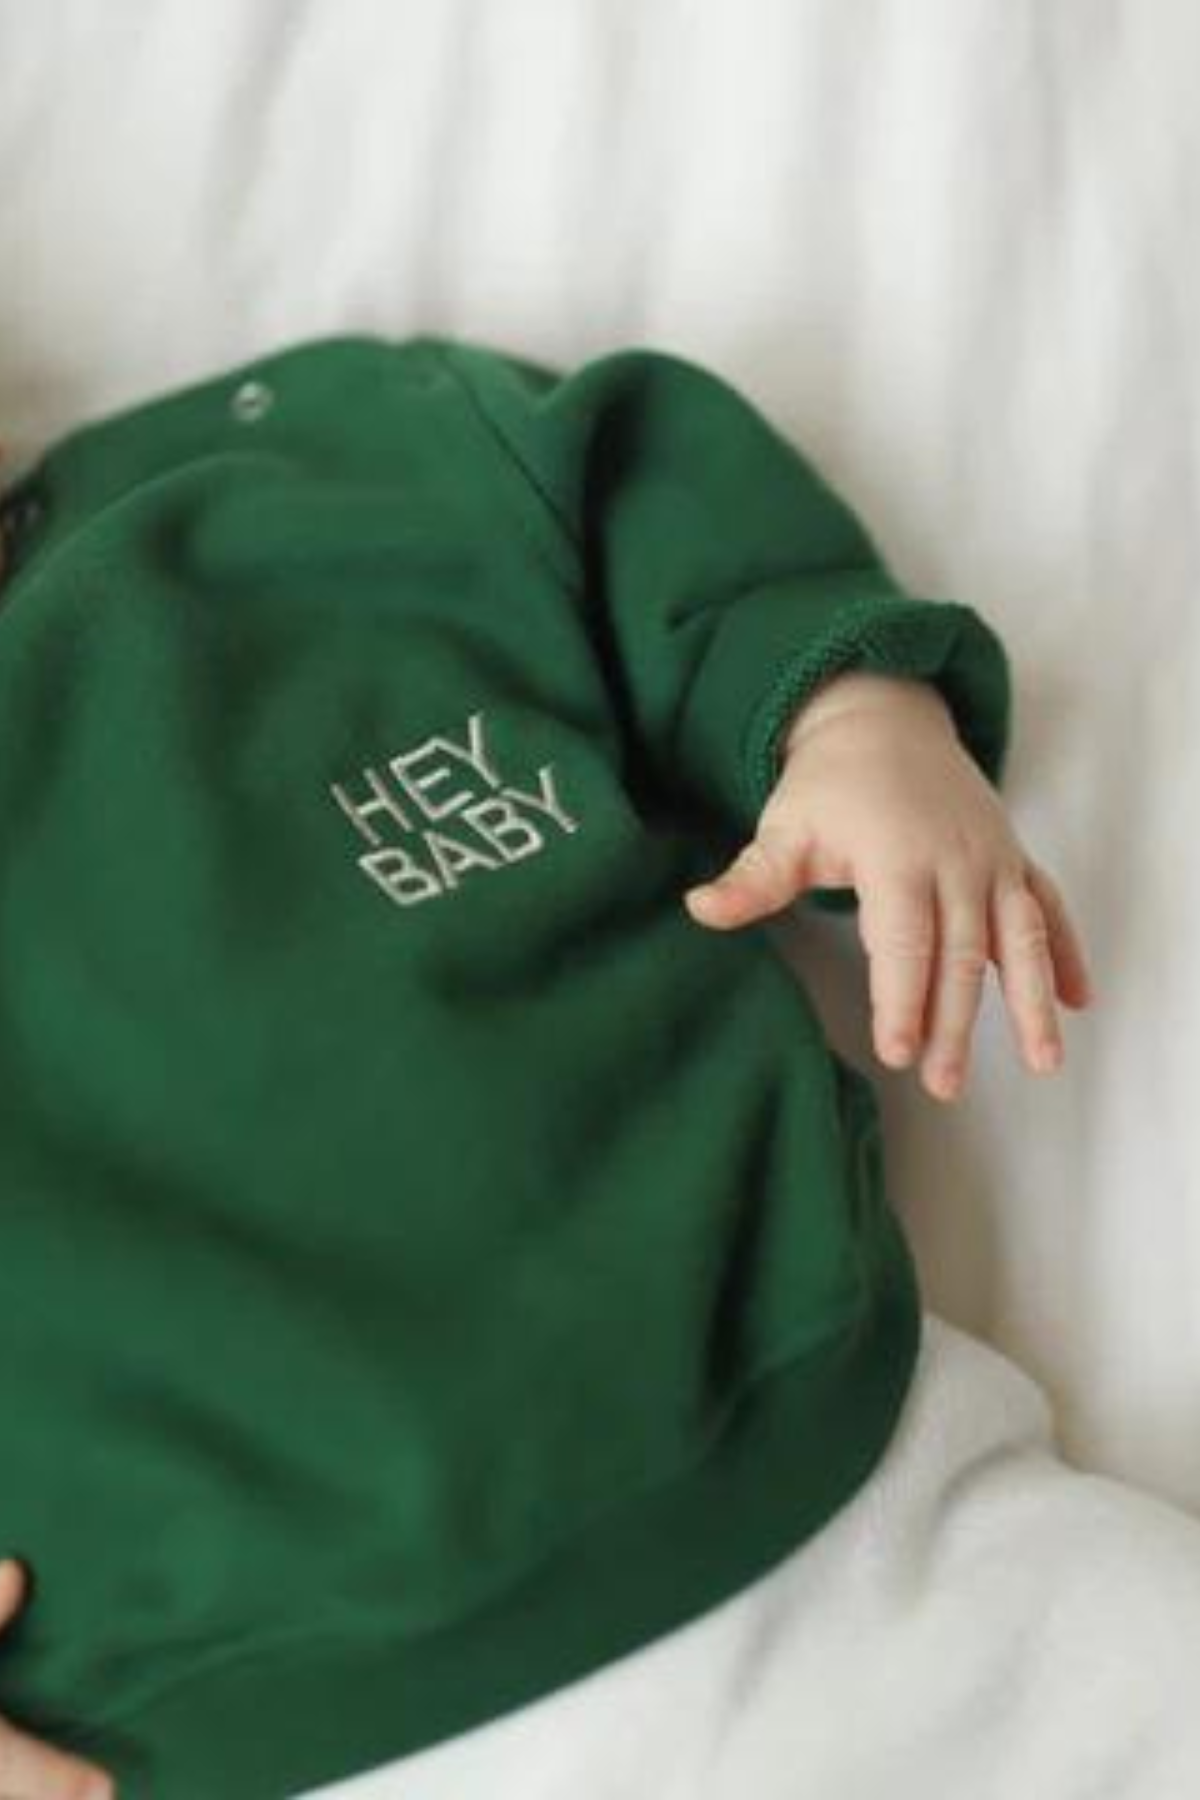 Mini-Sweatshirt "HEY BABY" | verschiedene Farben